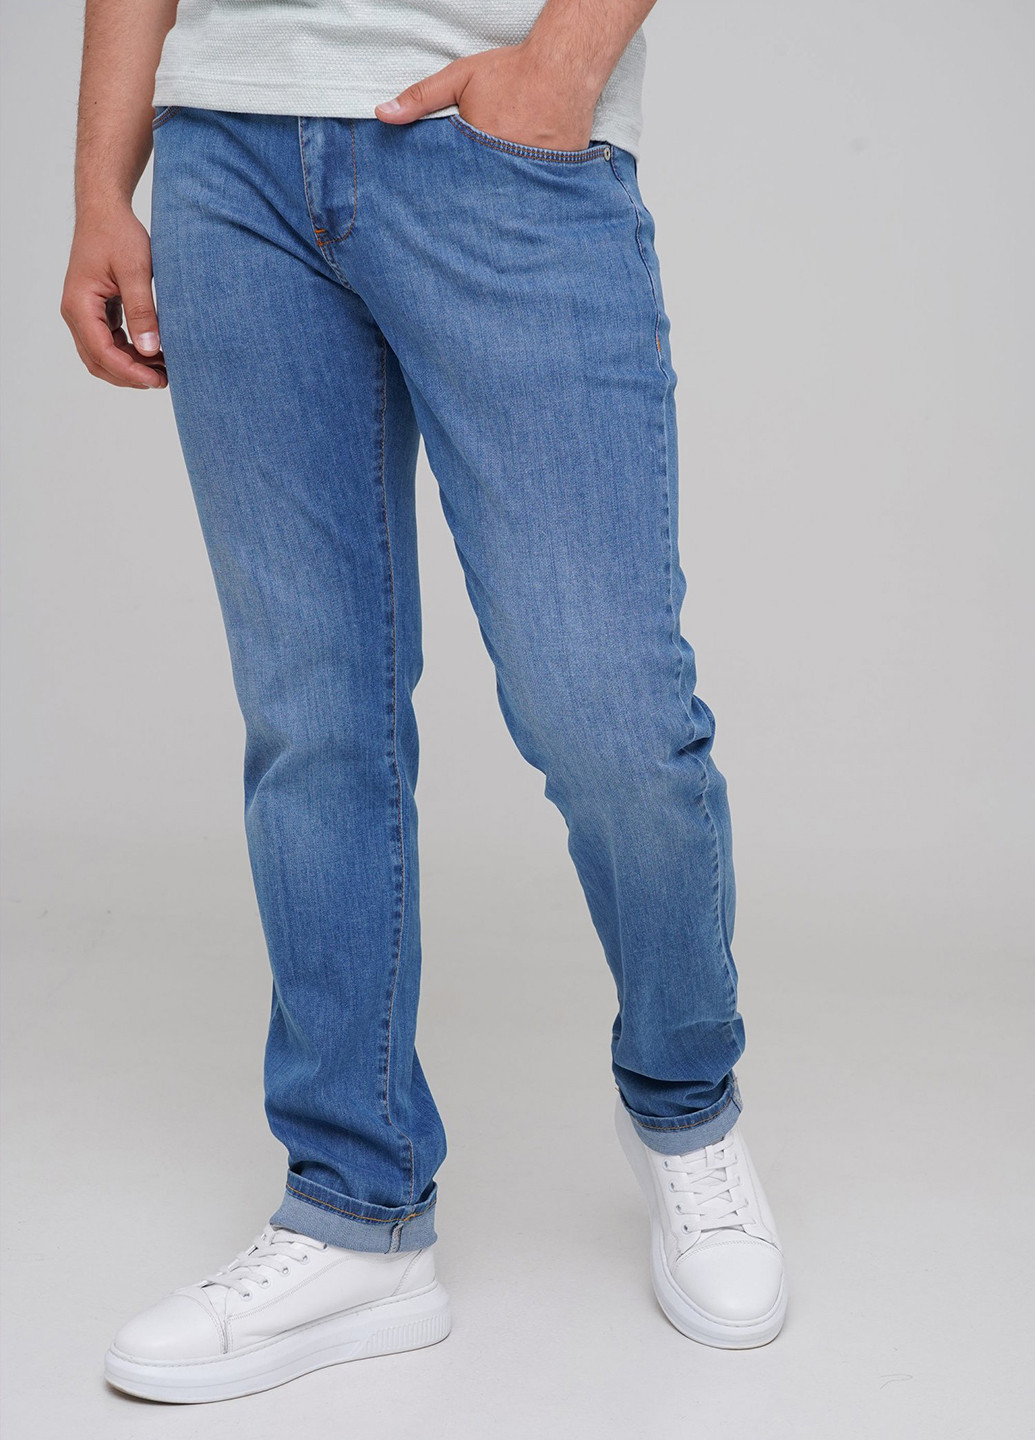 Светло-синие демисезонные прямые джинсы Trend Collection